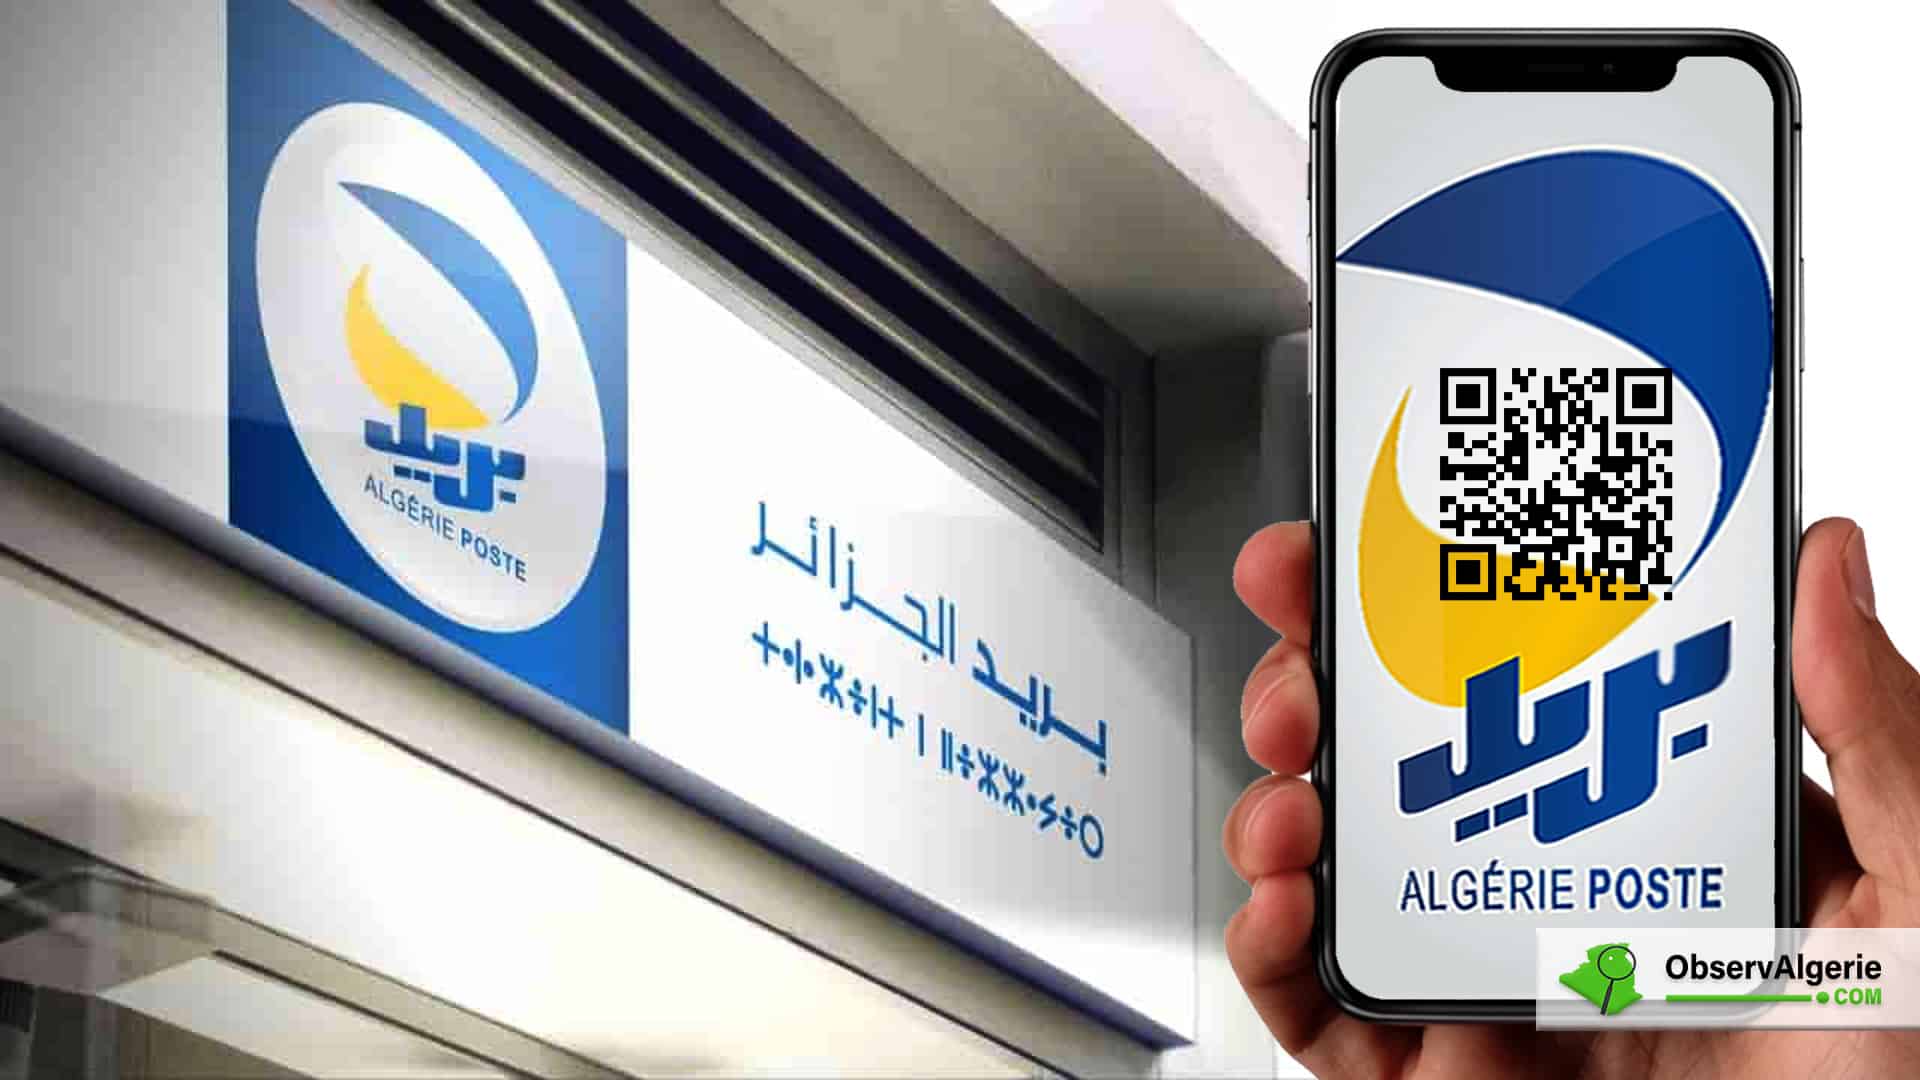 Algérie poste, Service de payement en ligne